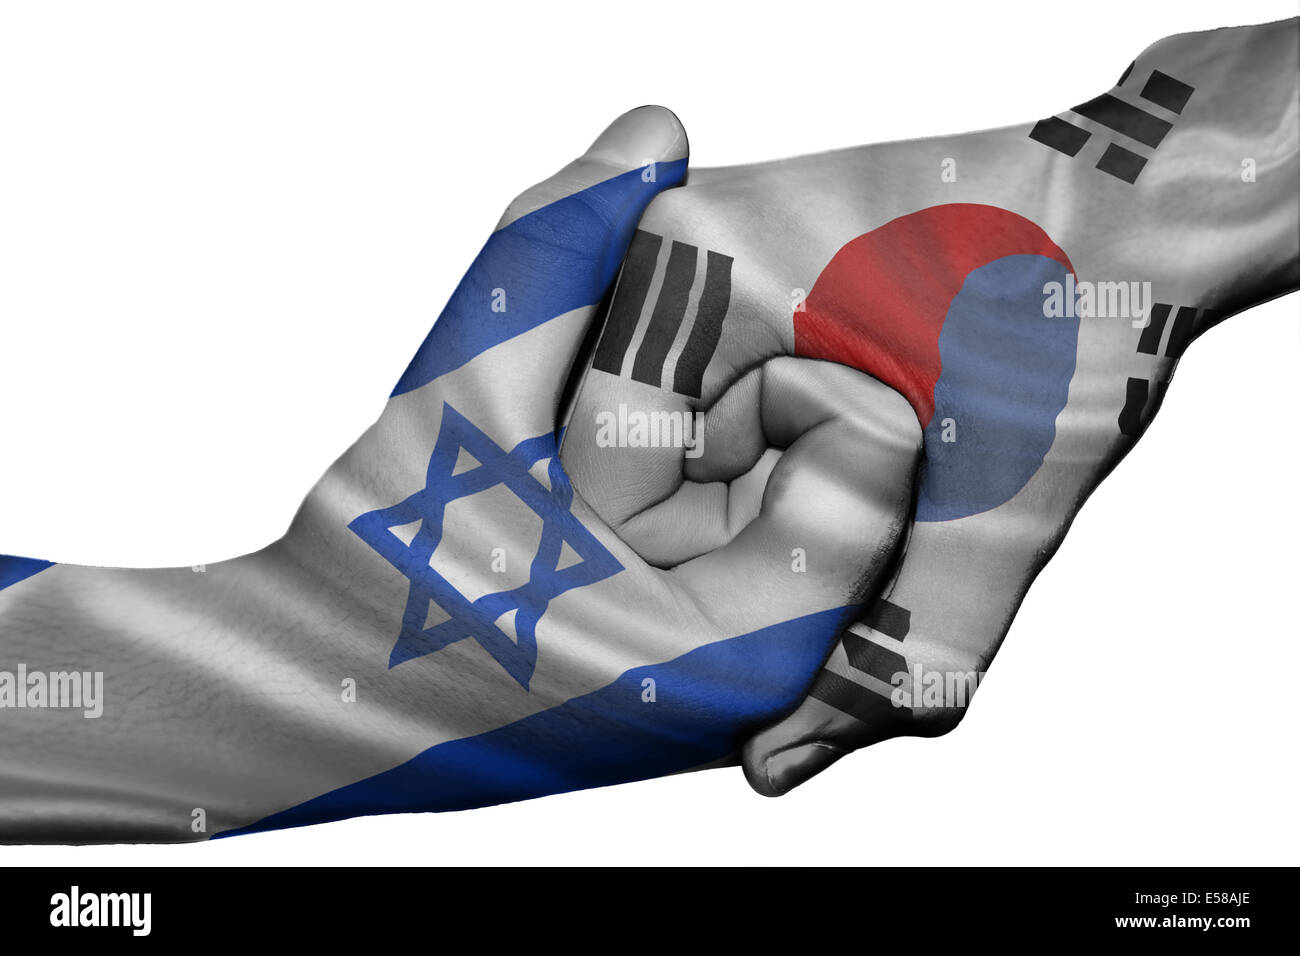 Handshake diplomatiche tra paesi: bandiere di Israele e la Corea del Sud sovradipinta le due mani Foto Stock